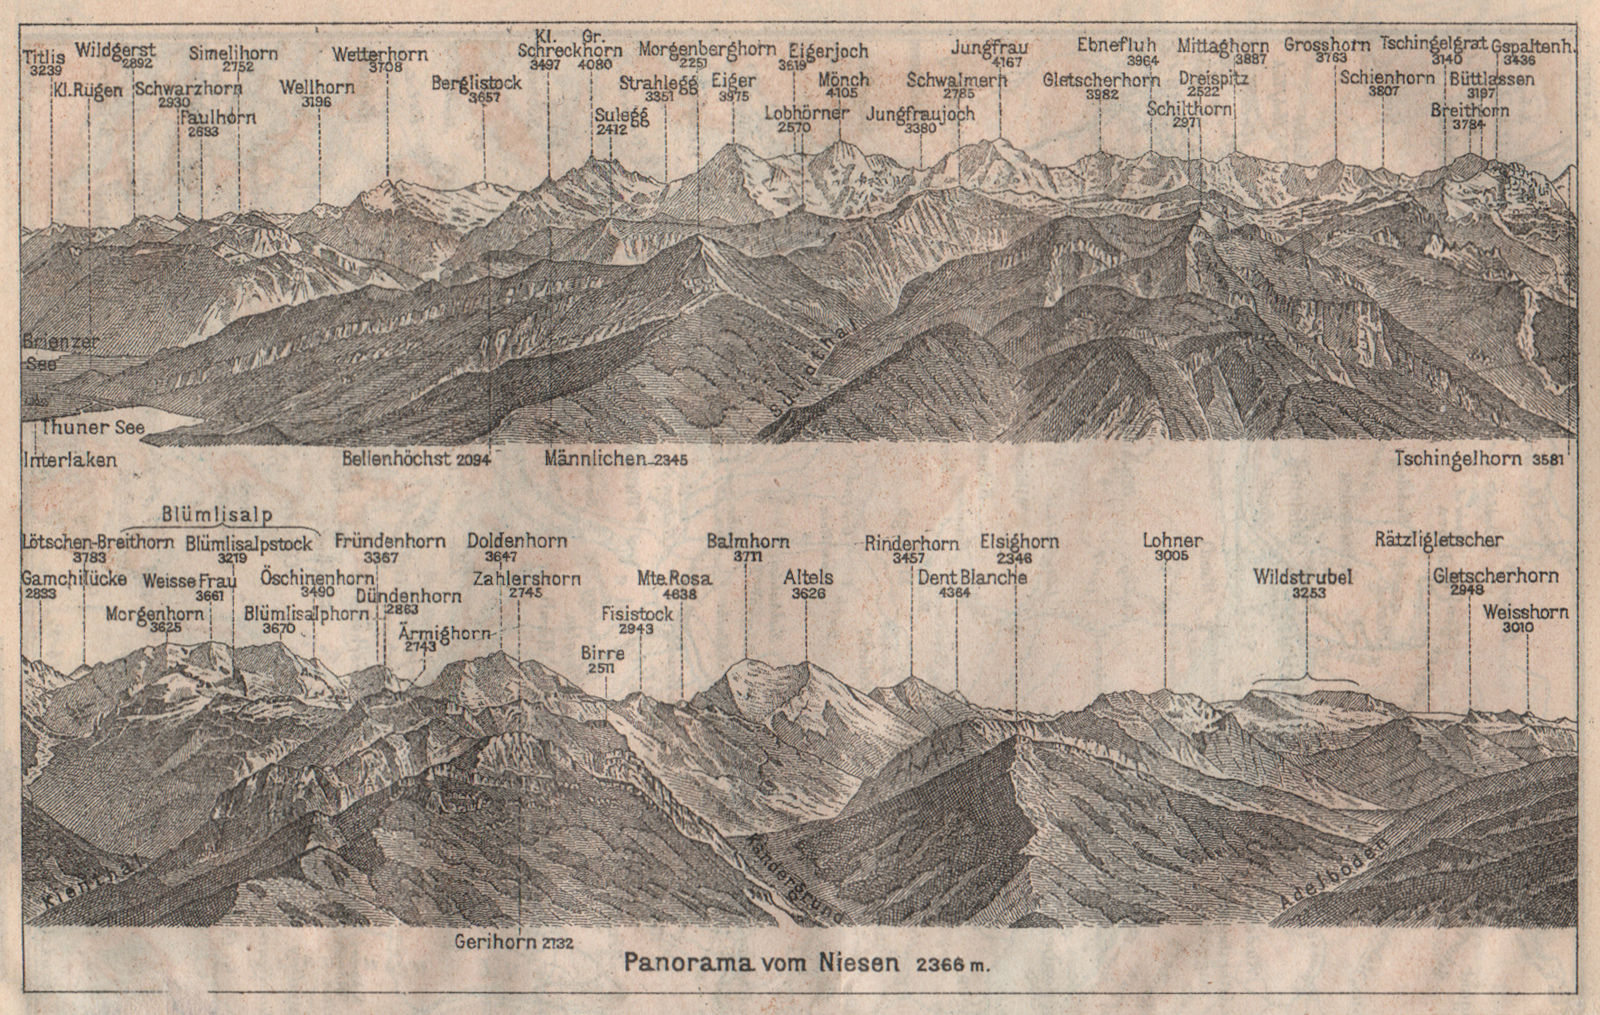 PANORAMA from/von NIESEN 2366m. Blumisalp Jungfrau Switzerland Schweiz 1911 map